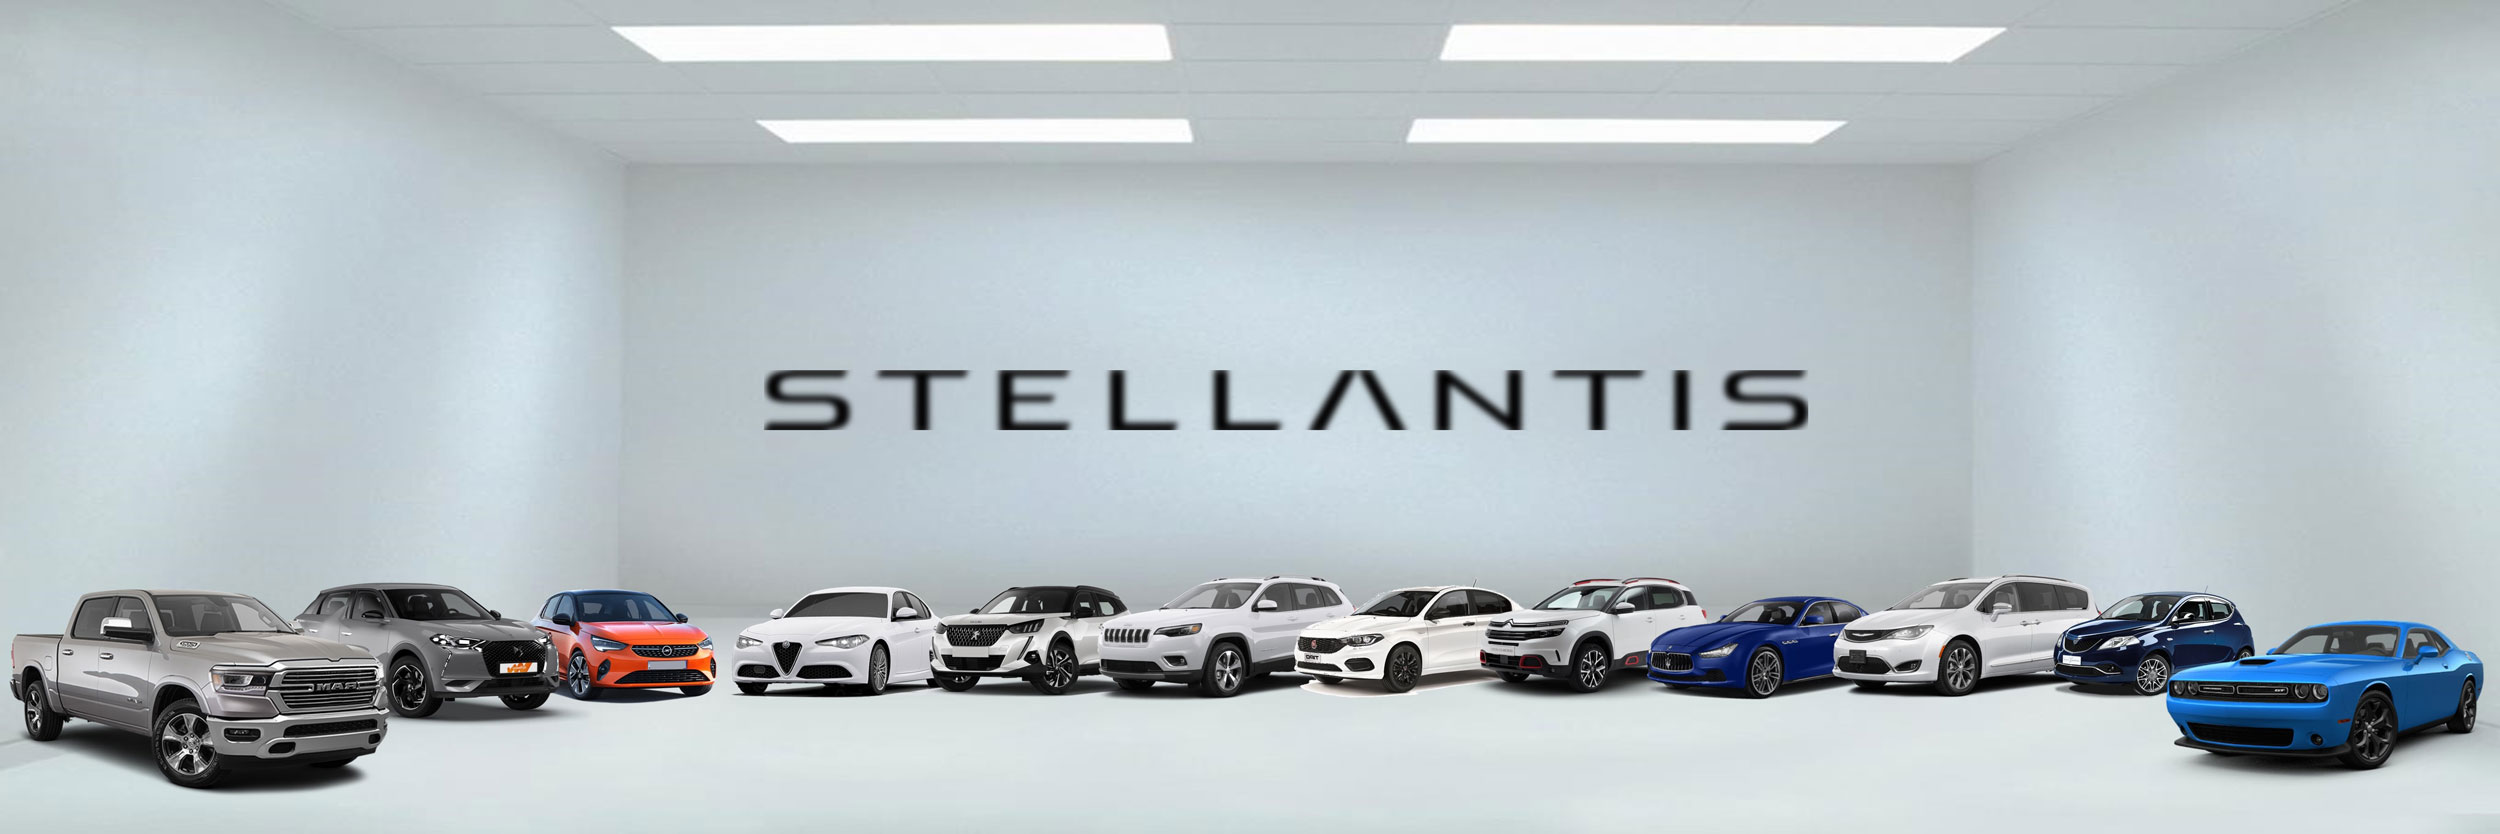 Stellantis ги откажа договорите на сите досегашни европски дистрибутери